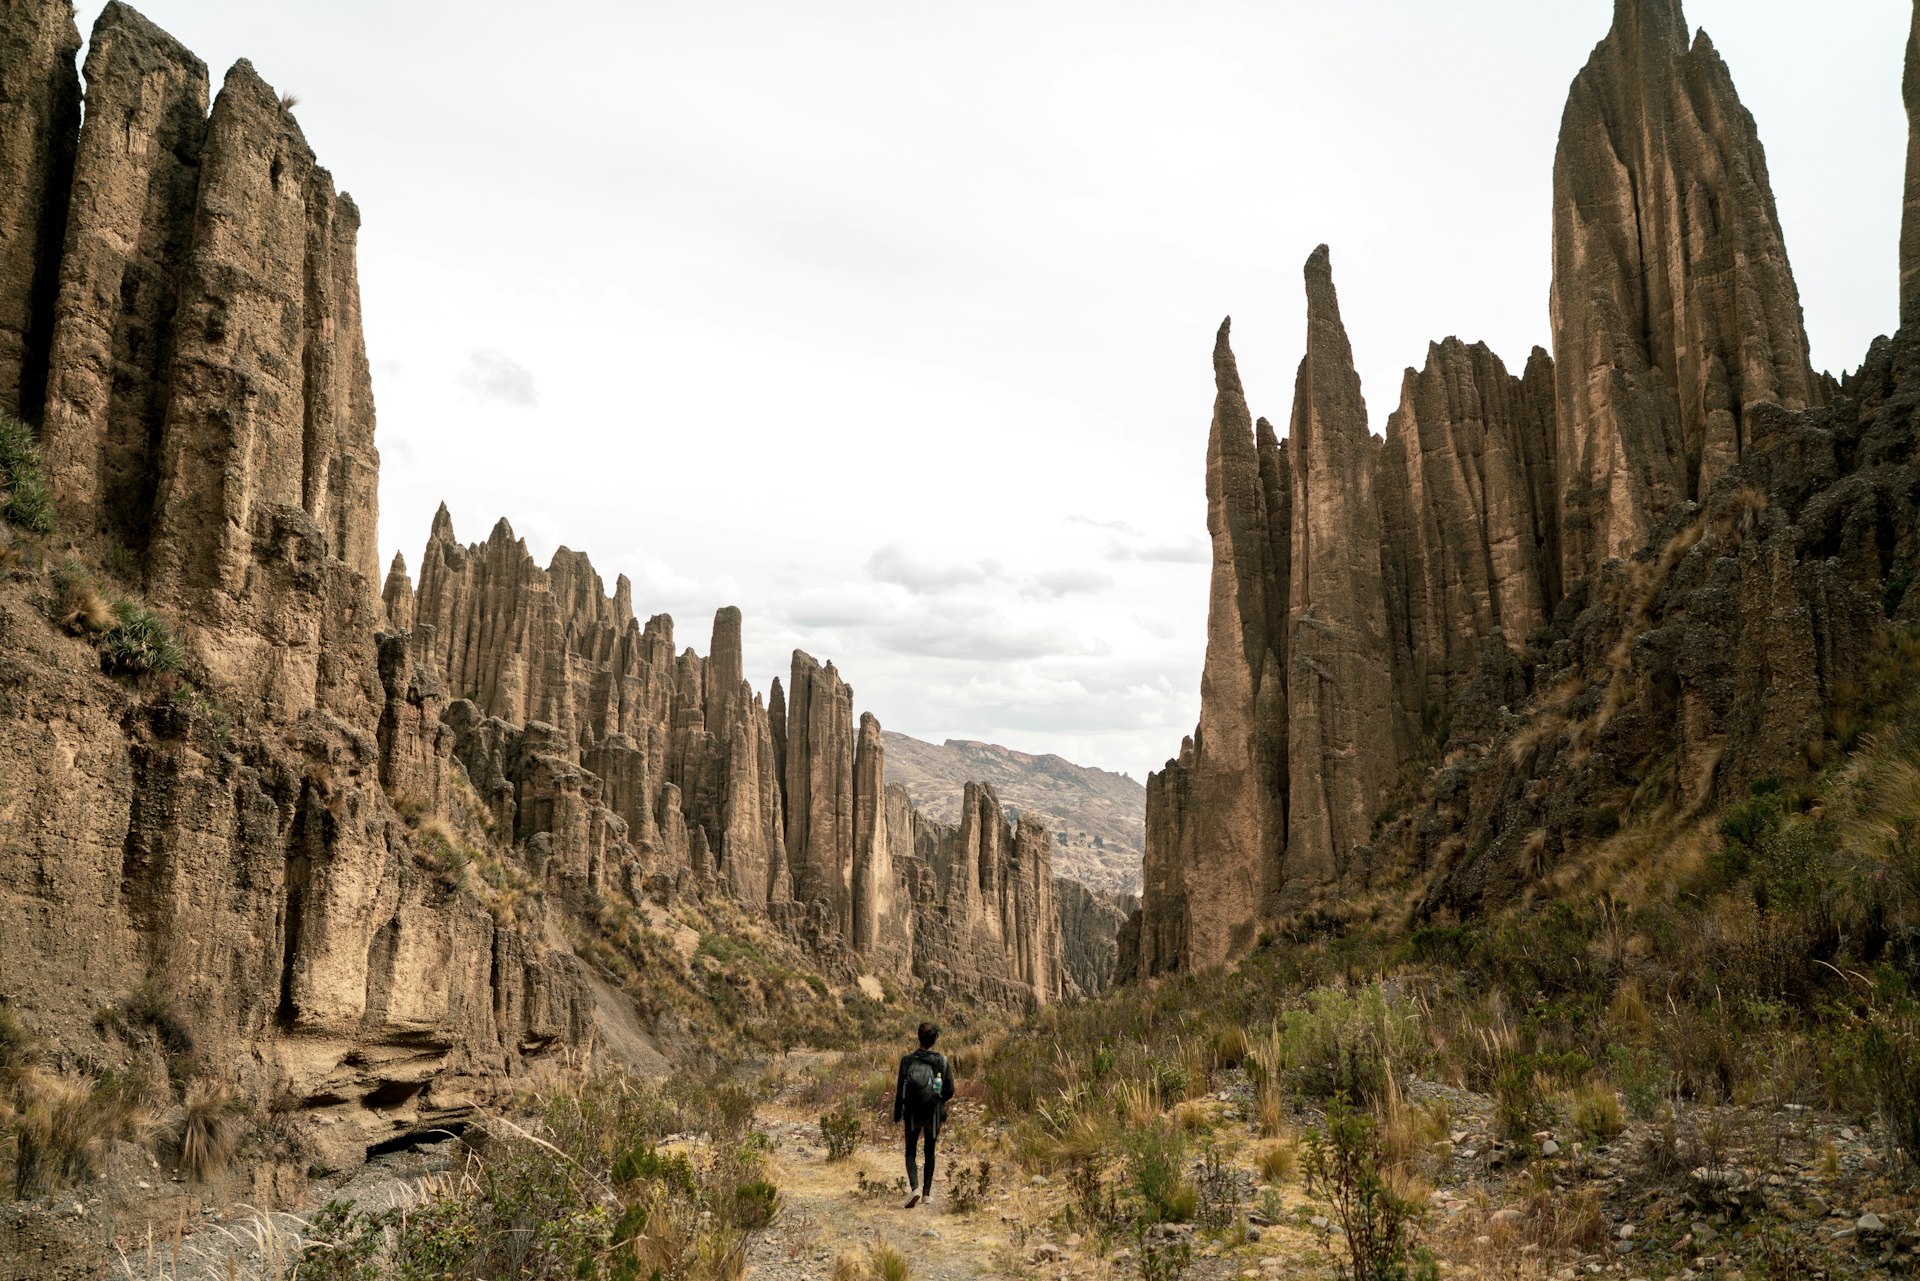 A man hikes through the towering rock formations in the Valle de las Ánimas, La Paz, Bolivia